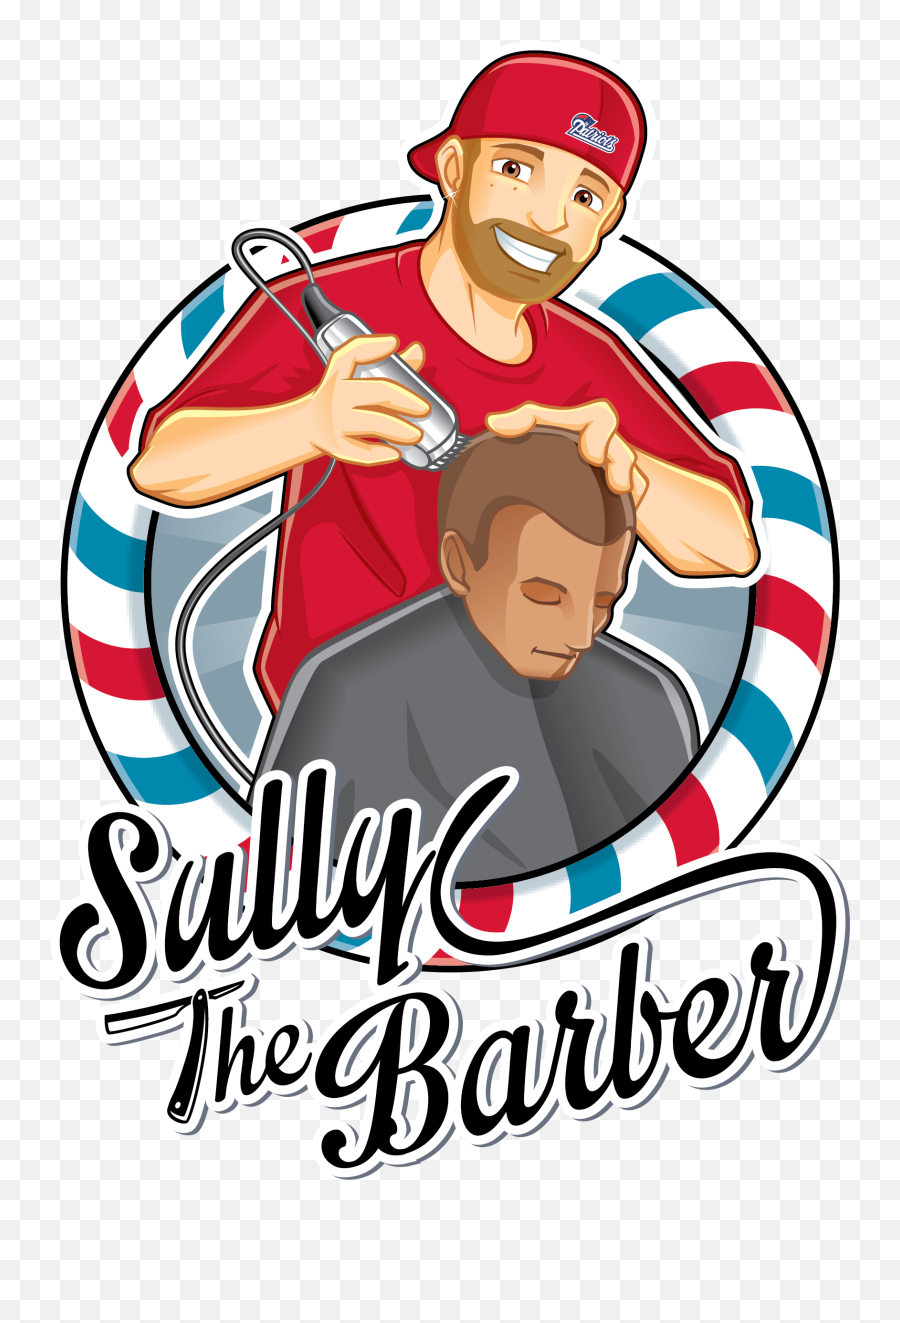 Sullythebarber U2014 I Should Be Your Barber T Shirt Blue Emoji,Barber Logo Designs